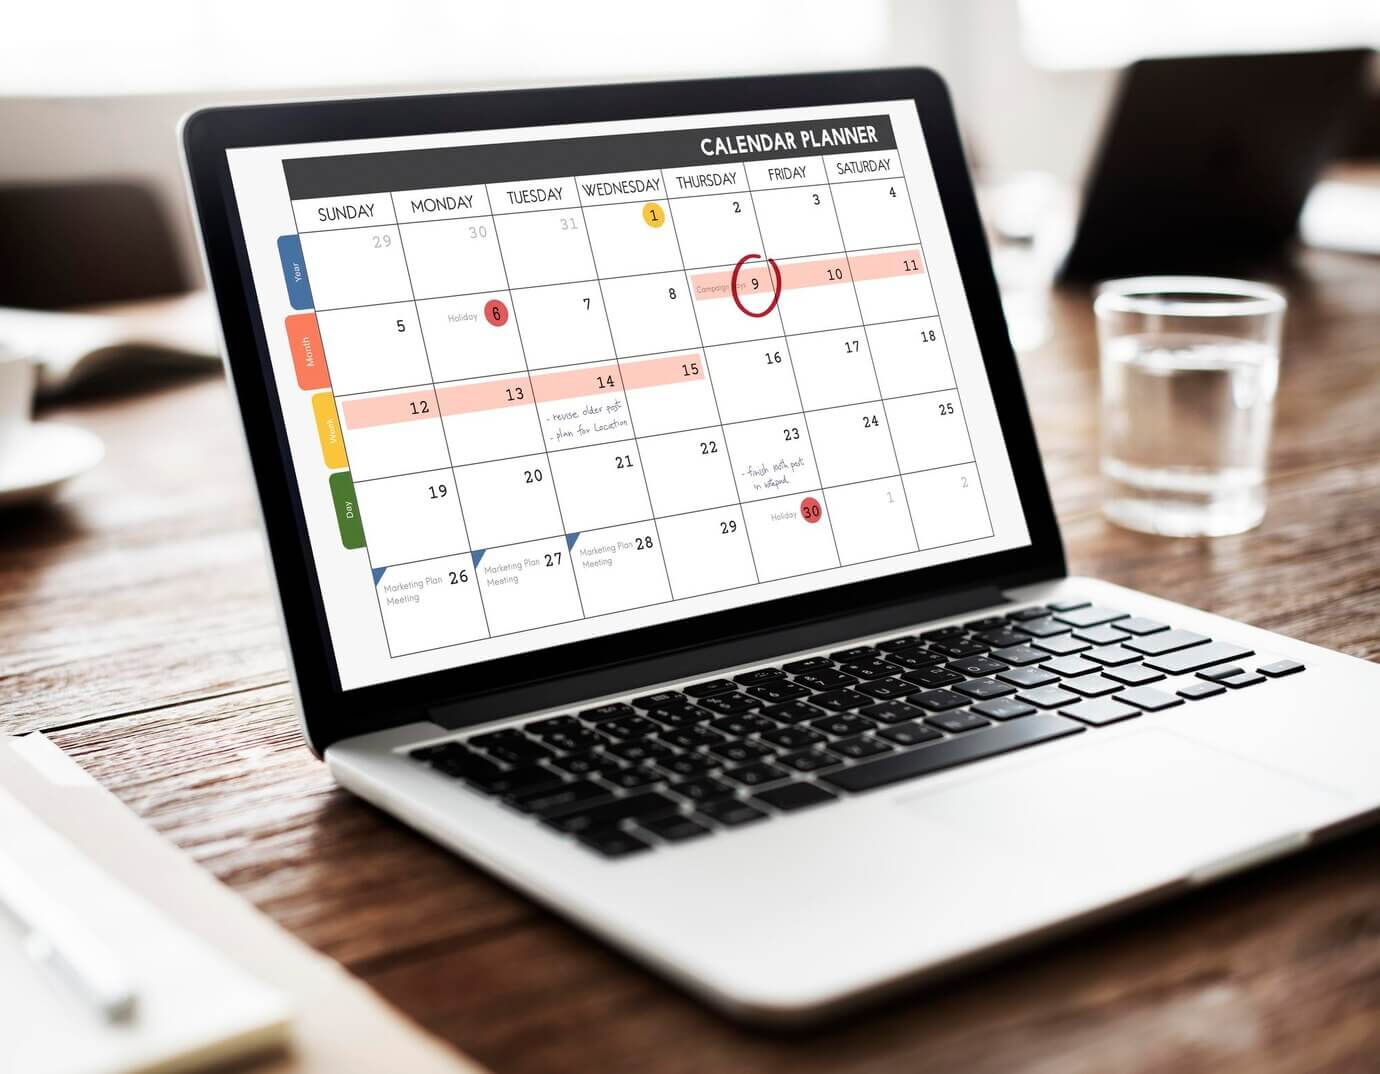 Calendar planner organization management. Scheduling deployment